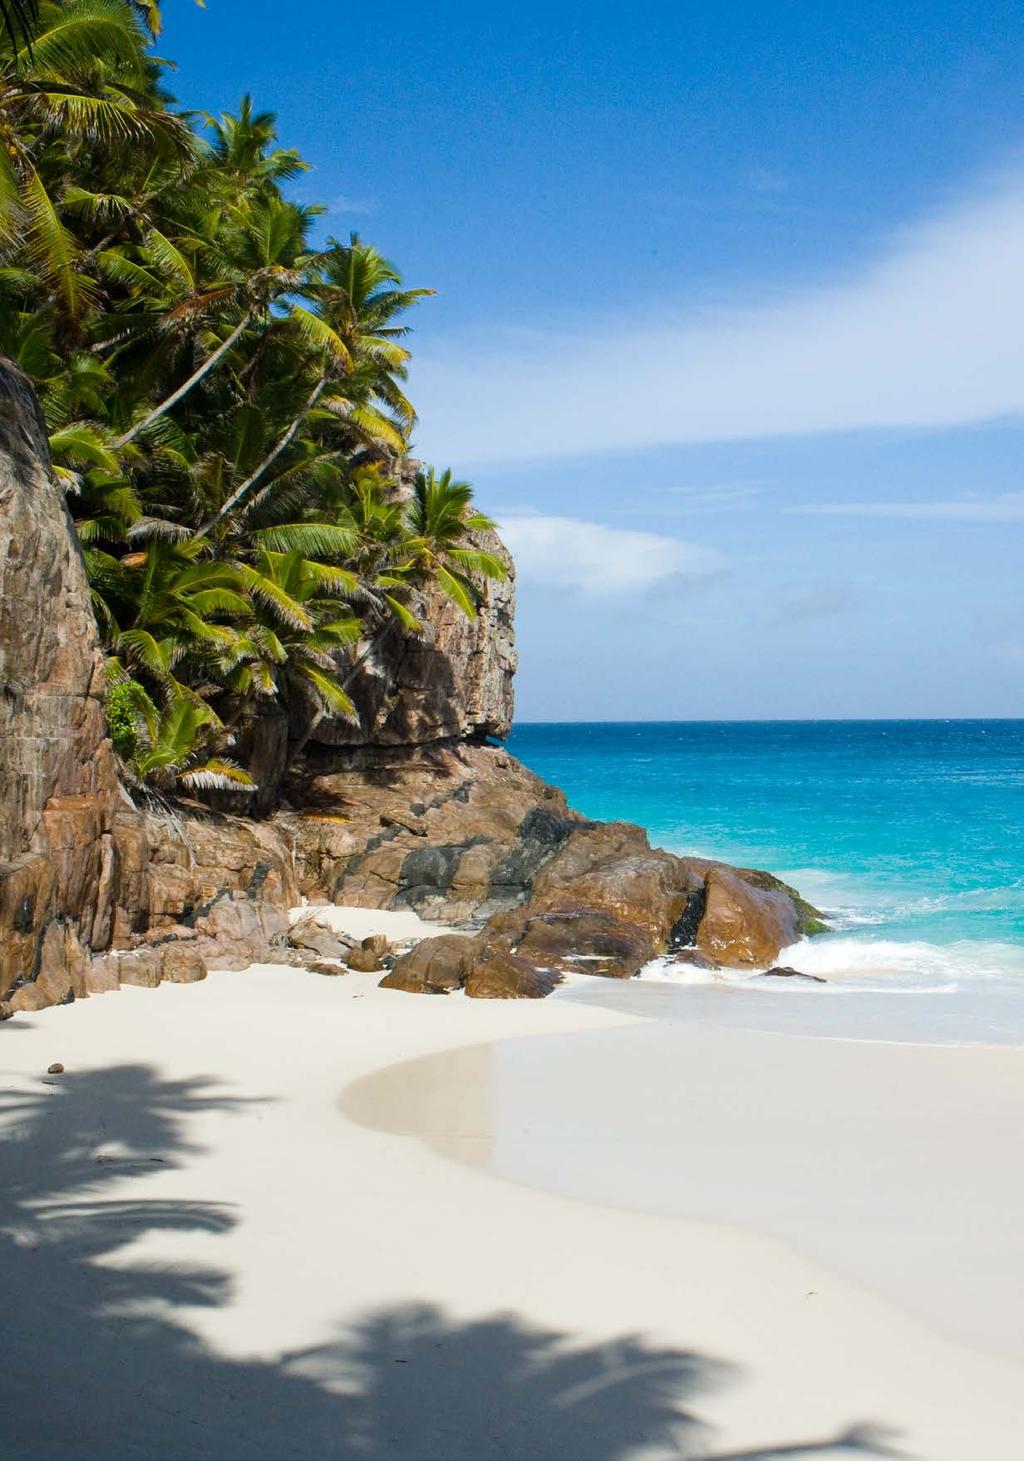 Frégate Island é outra ilha exclusiva de Seychelles, que oferece acomodação e experiências excelentes. O acesso é feito via helicóptero, em um voo cênico de 15 minutos, ou de barco.